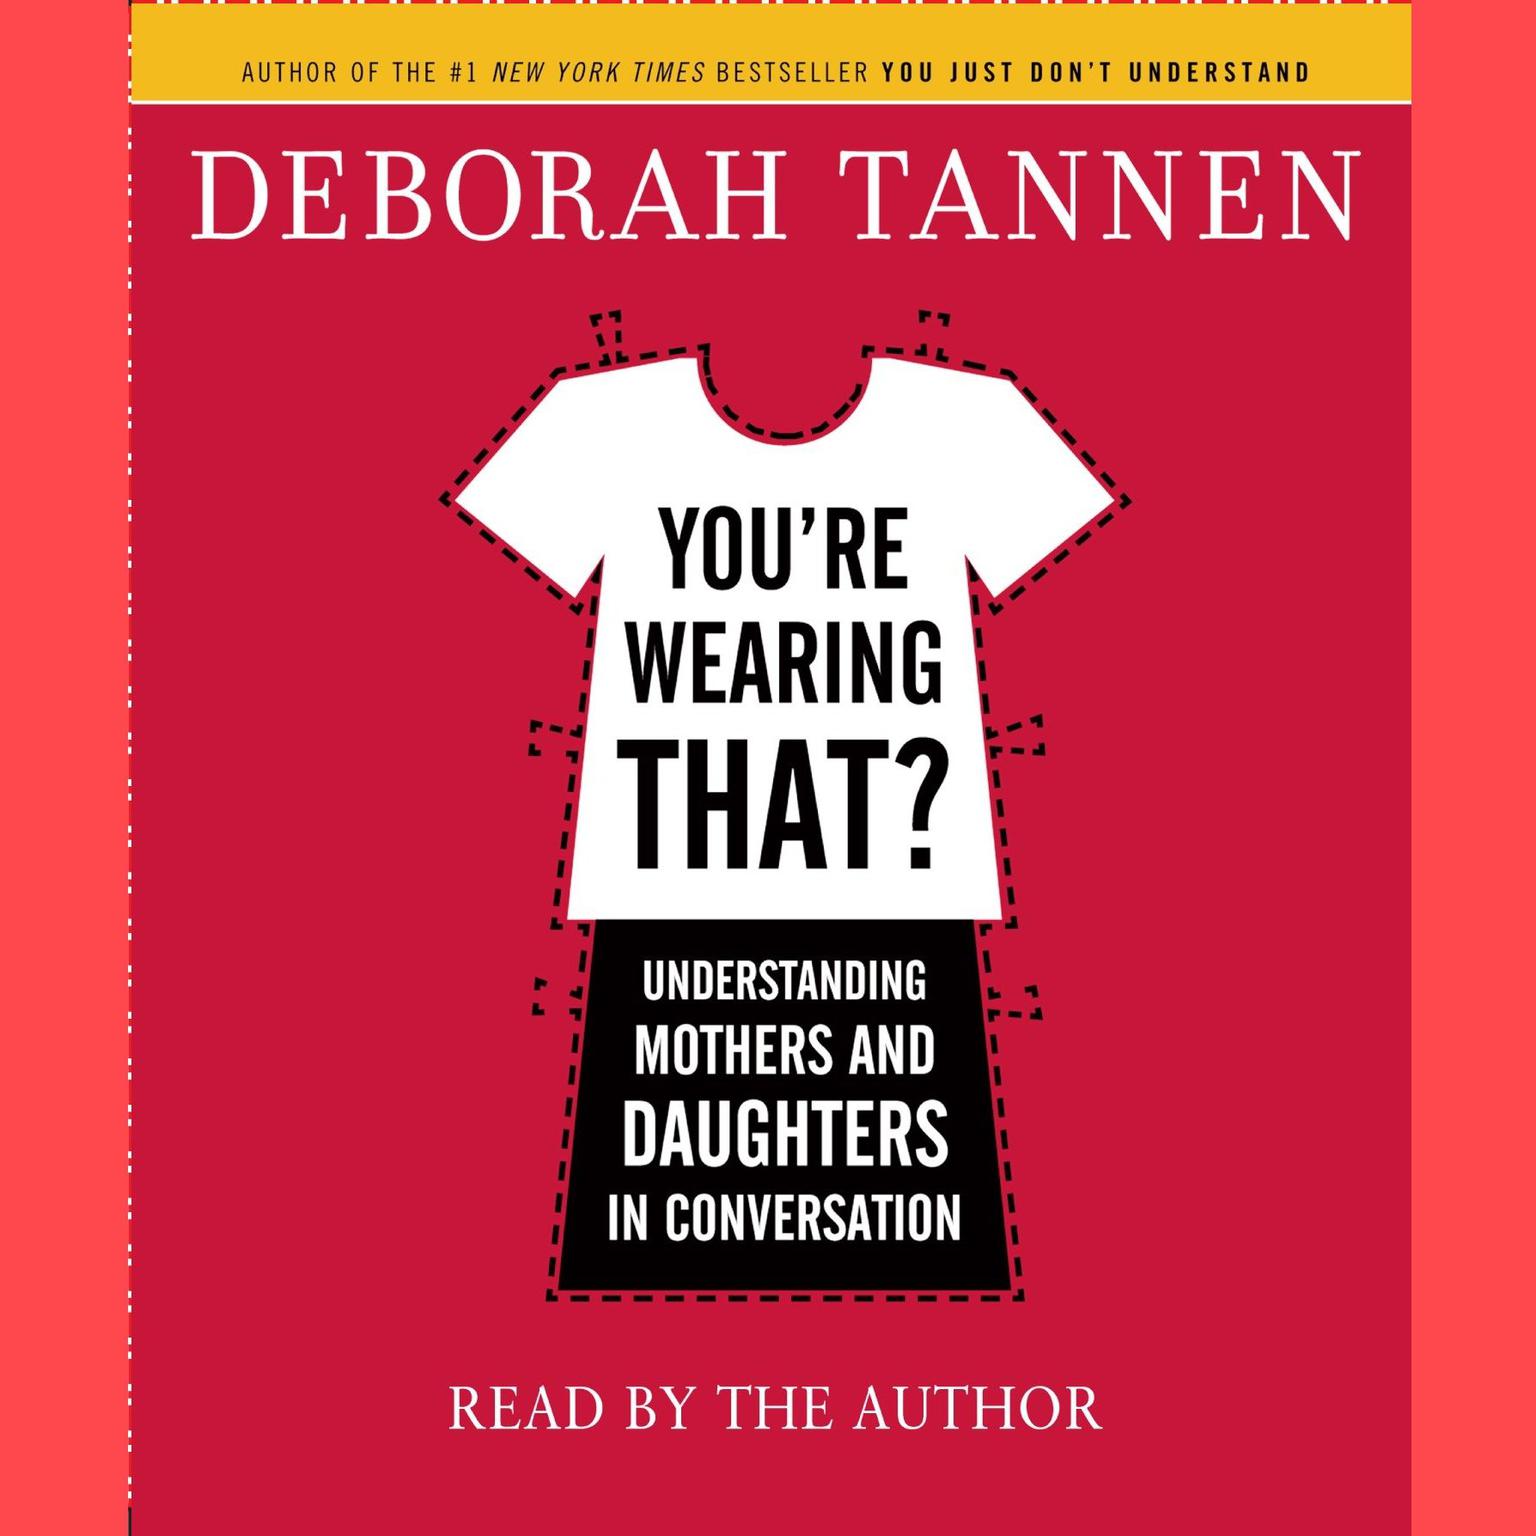 Youre Wearing That?: Understanding Mothers and Daughters in Conversation Audiobook, by Deborah Tannen